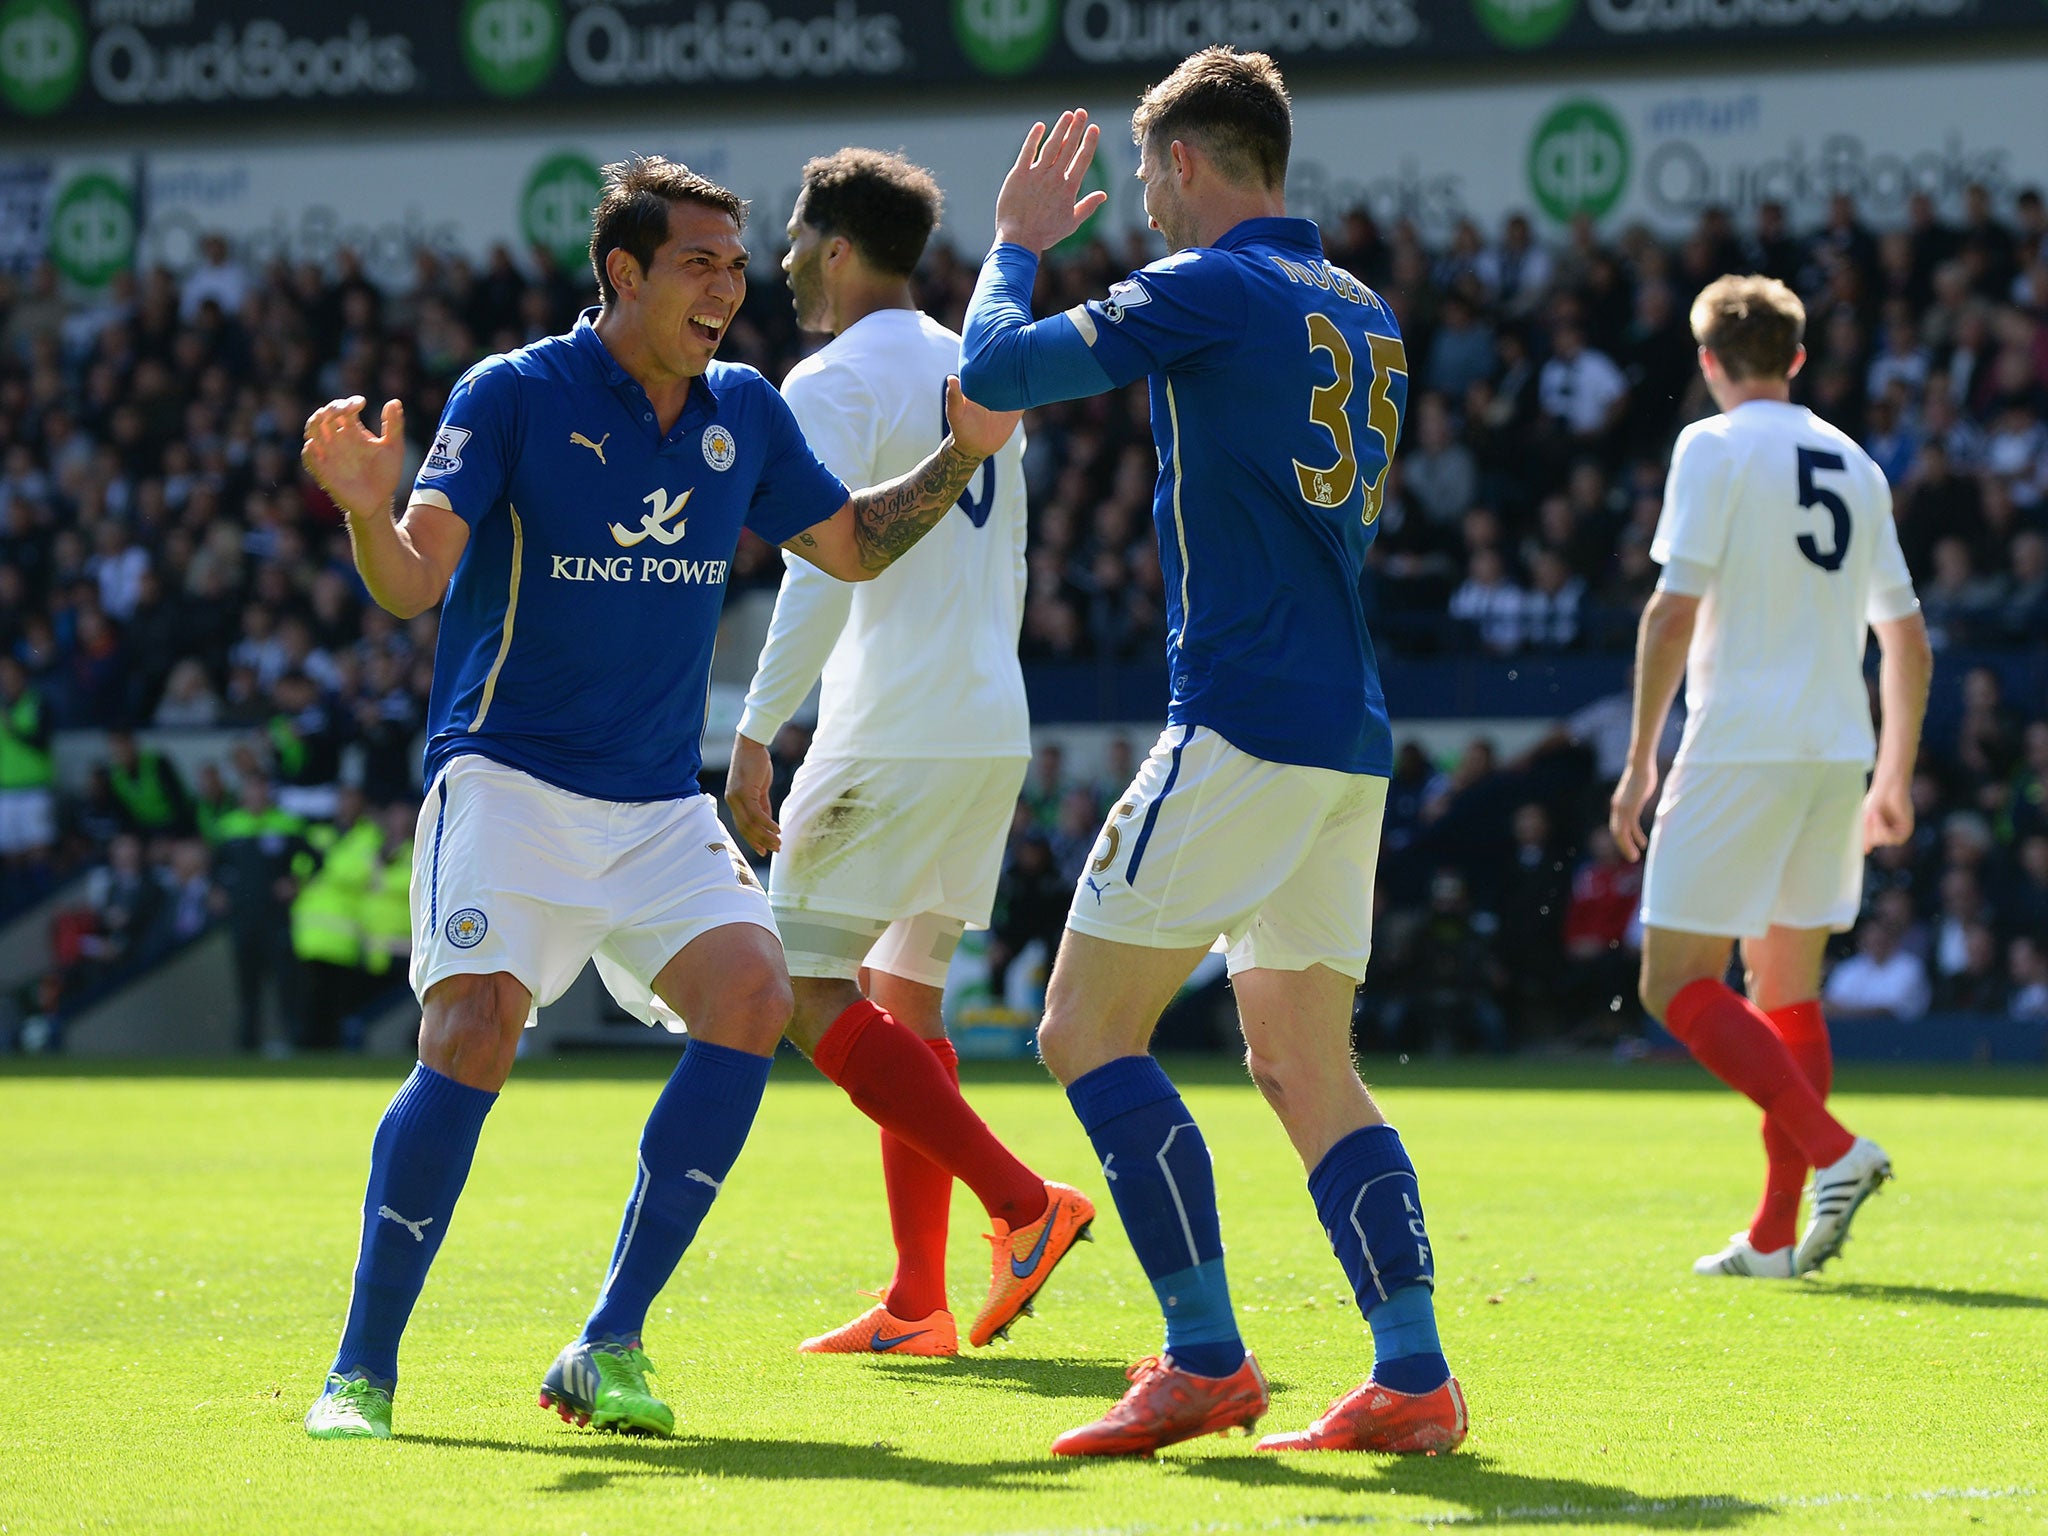 Leonardo Ulloa celebrates after scoring to put Leicester ahead